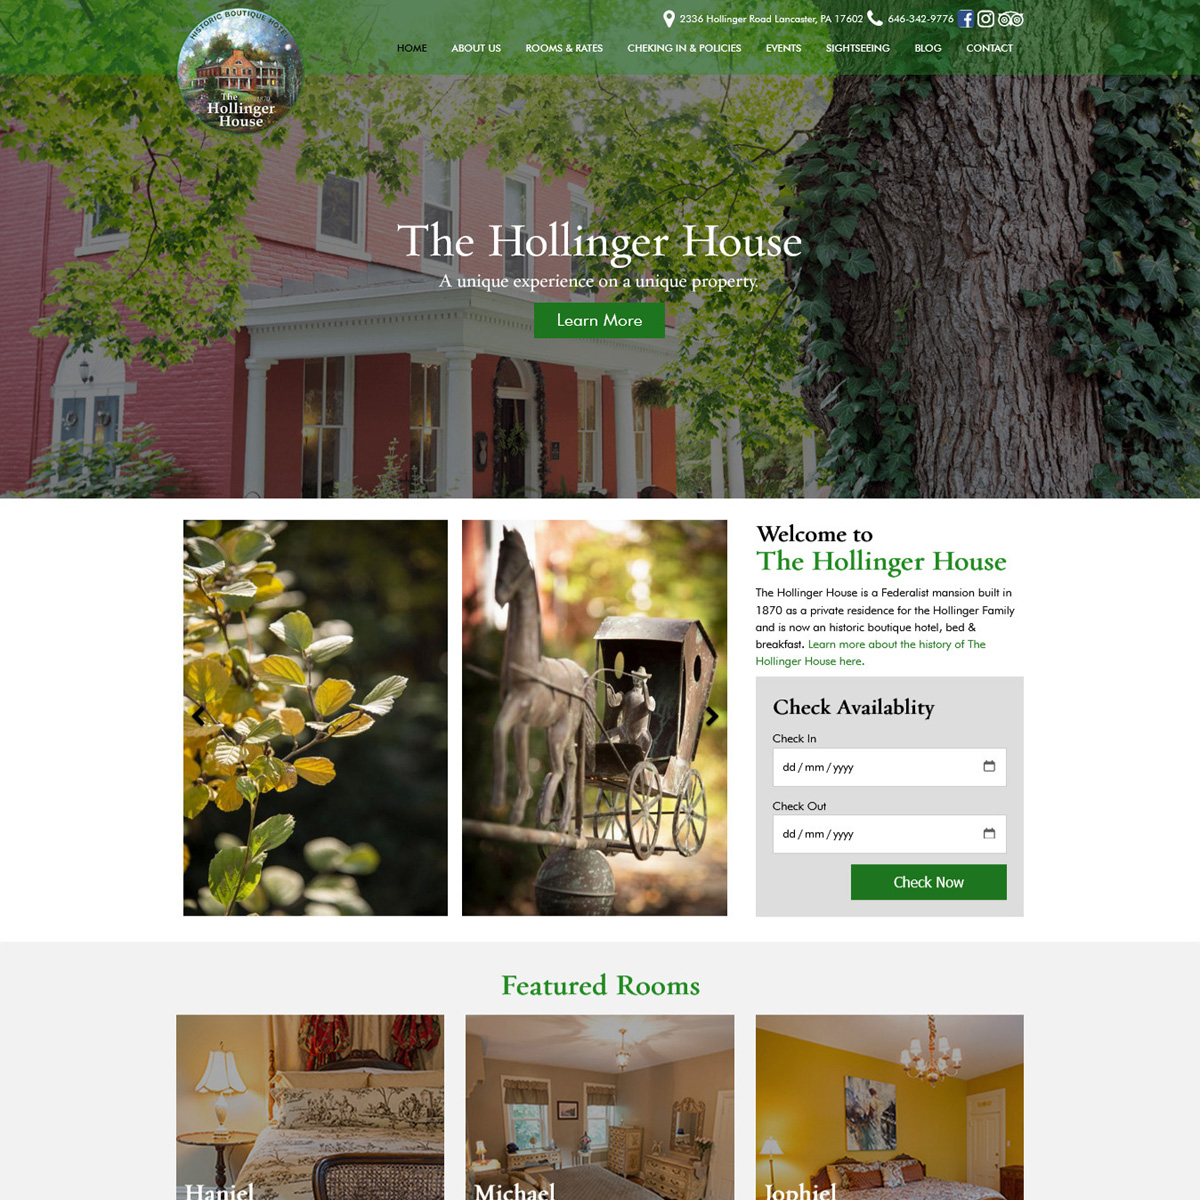 The Hollinger House Bed & Breakfast Website Design